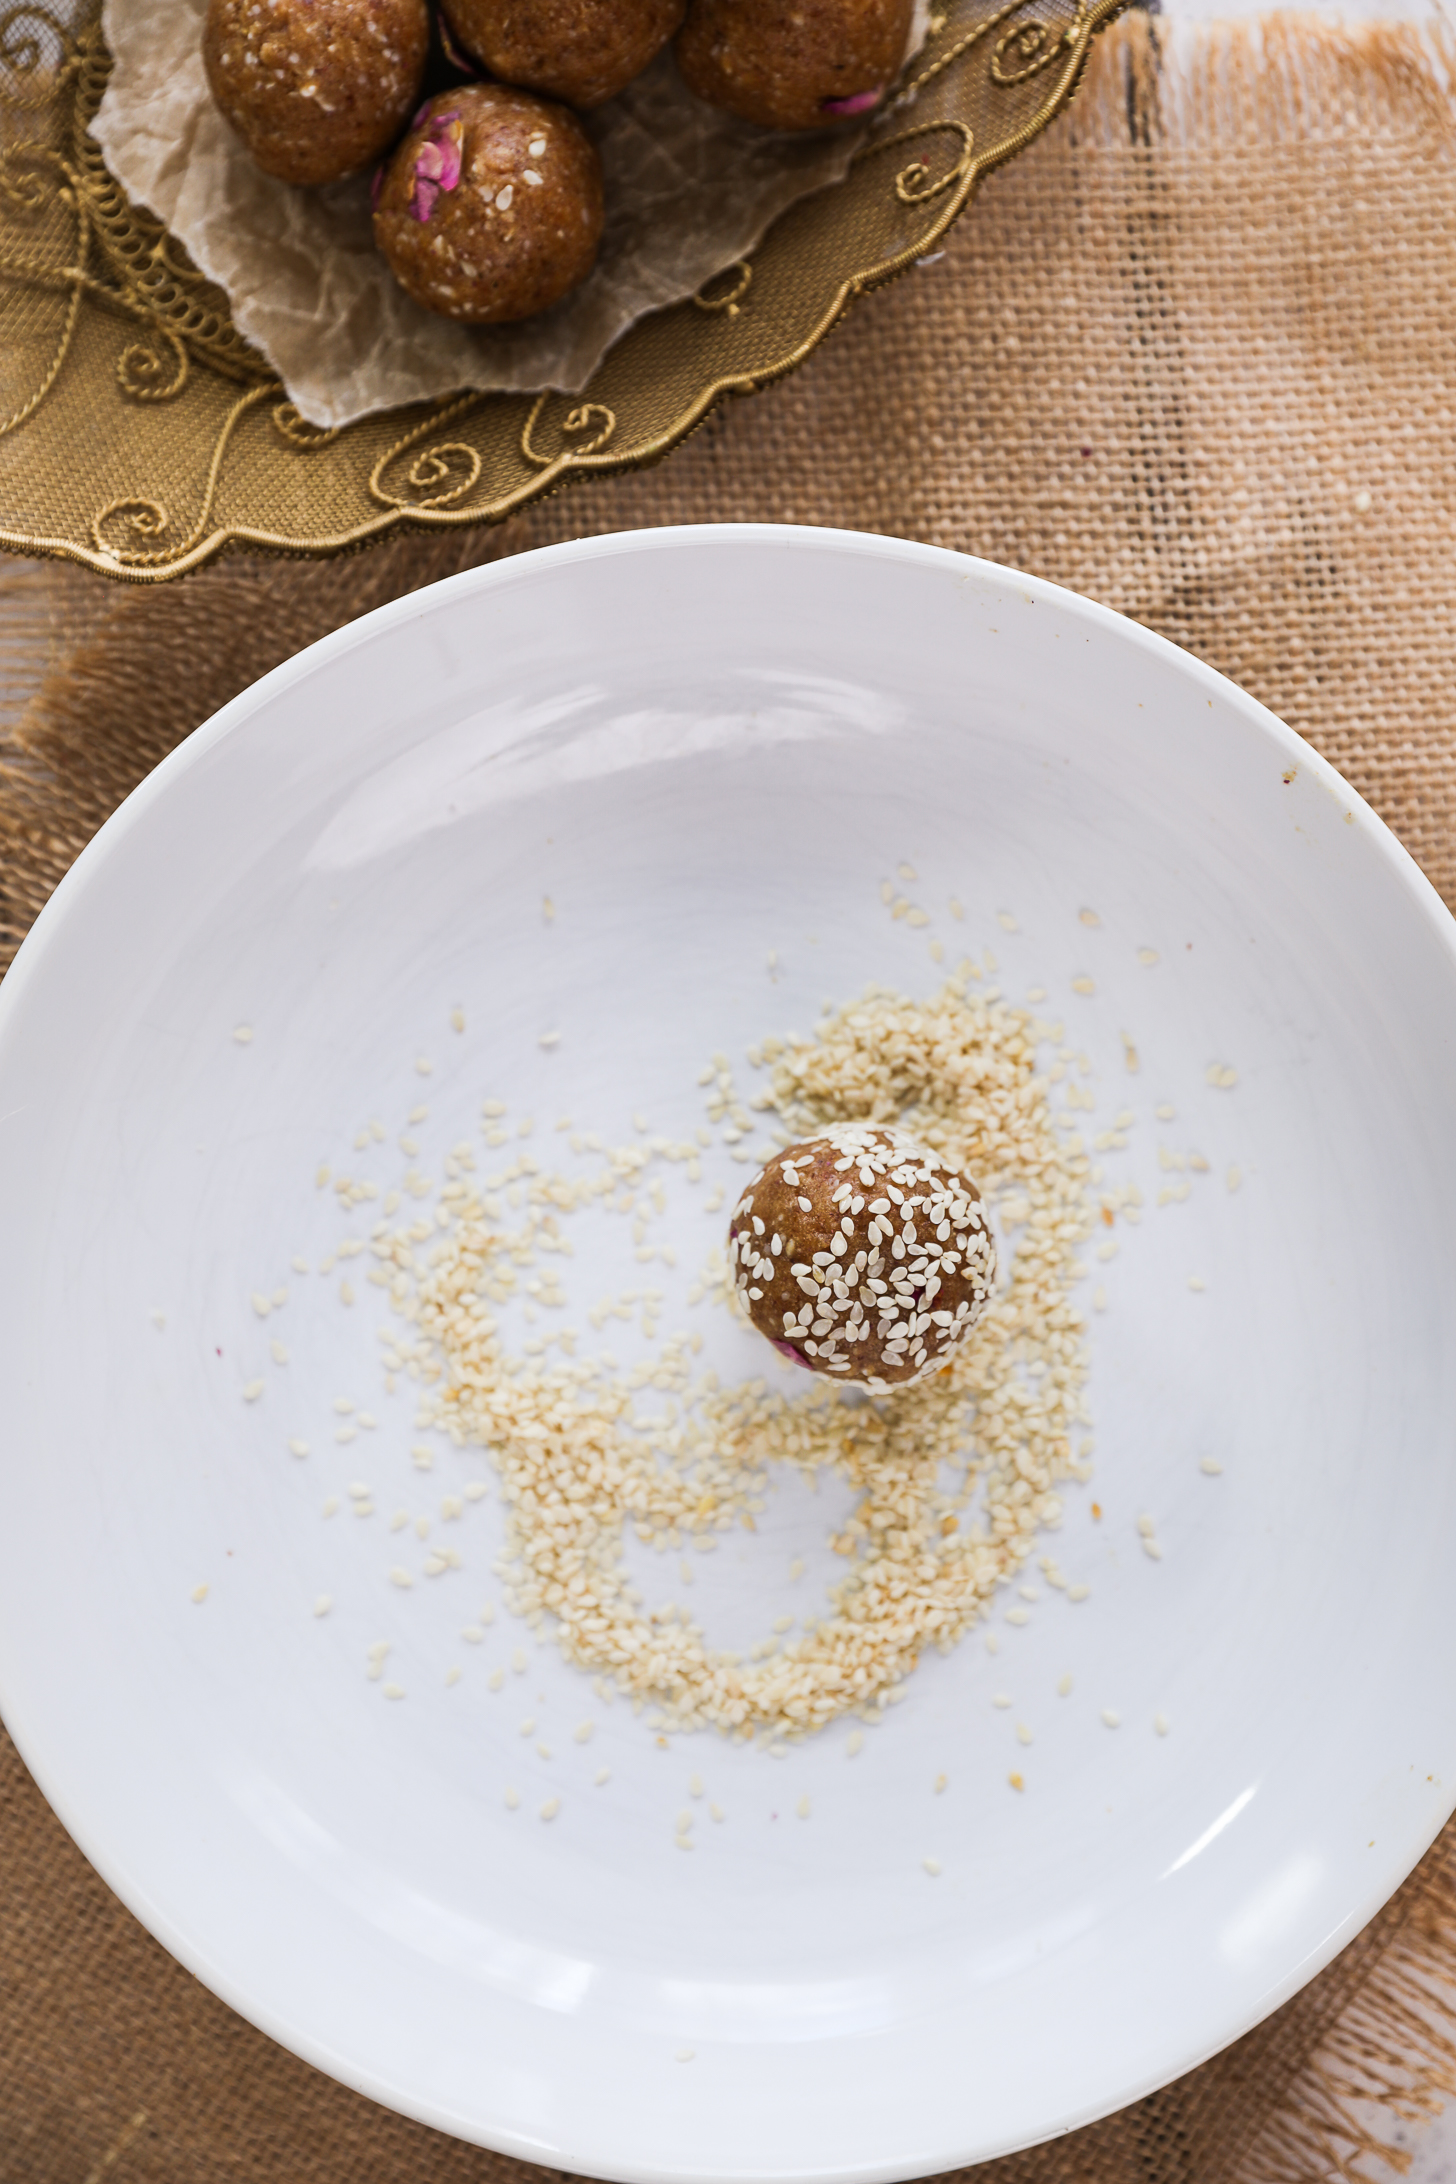 یک توپ بلیس قهوه‌ای پوشیده از کنجد که در میان دانه‌های کنجد روی یک بشقاب سفید قرار گرفته است.